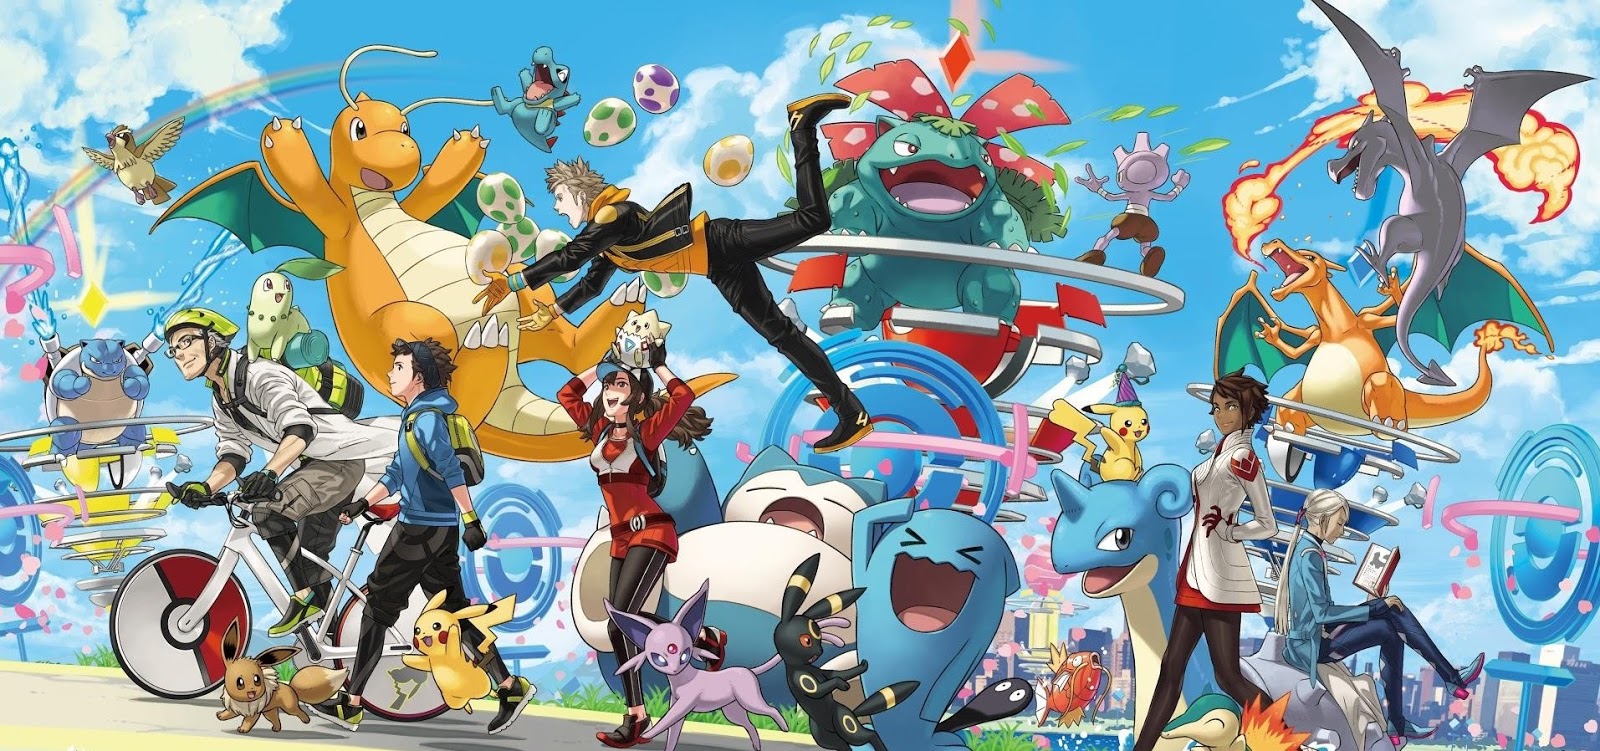 Melhores Pokémon do tipo Psíquico em Pokémon Sword & Shield - Mestre Pokemon